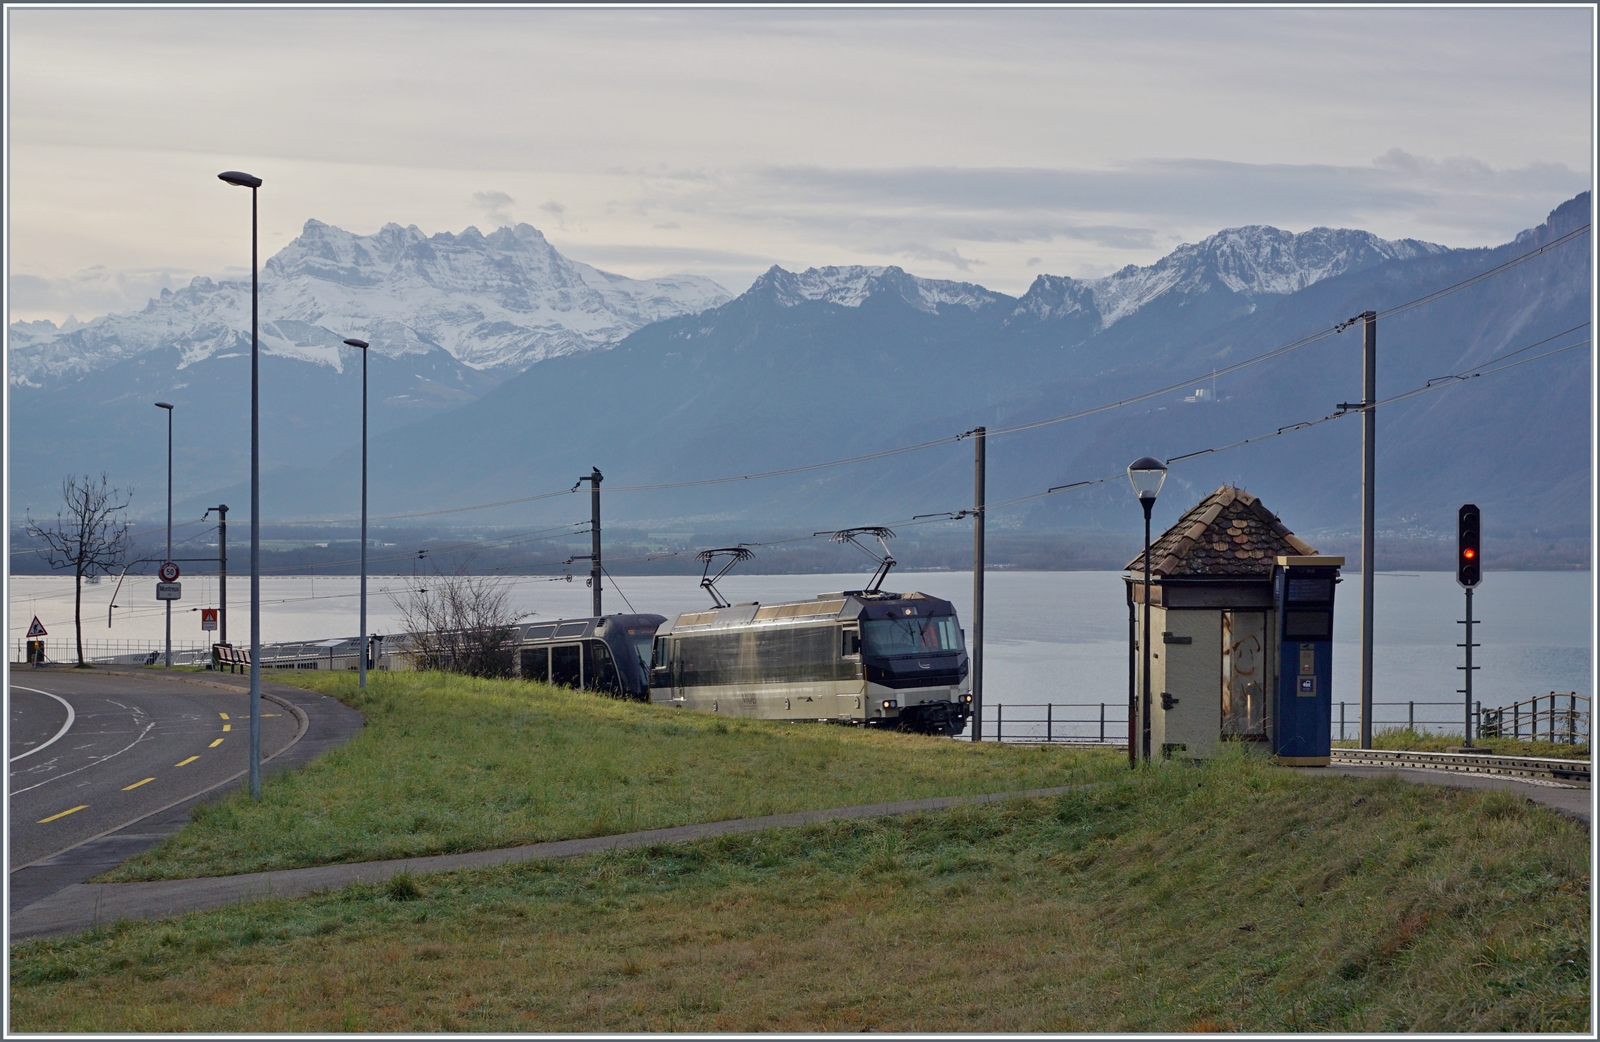 Der GoldenPass Express kommt: von Montreux kommend taucht die MOB Ge 4/4 8002 mit dem GPX 4068 bei Châtelard auf; dieses Bild zeigt eher wenig vom Zug, dafür um so mehr von Aussicht, welche die Reisenden auf dem Weg von Montreux nach Interlaken schon kurz nach der Abfahrt geniessen können.

26. Dezember 2022